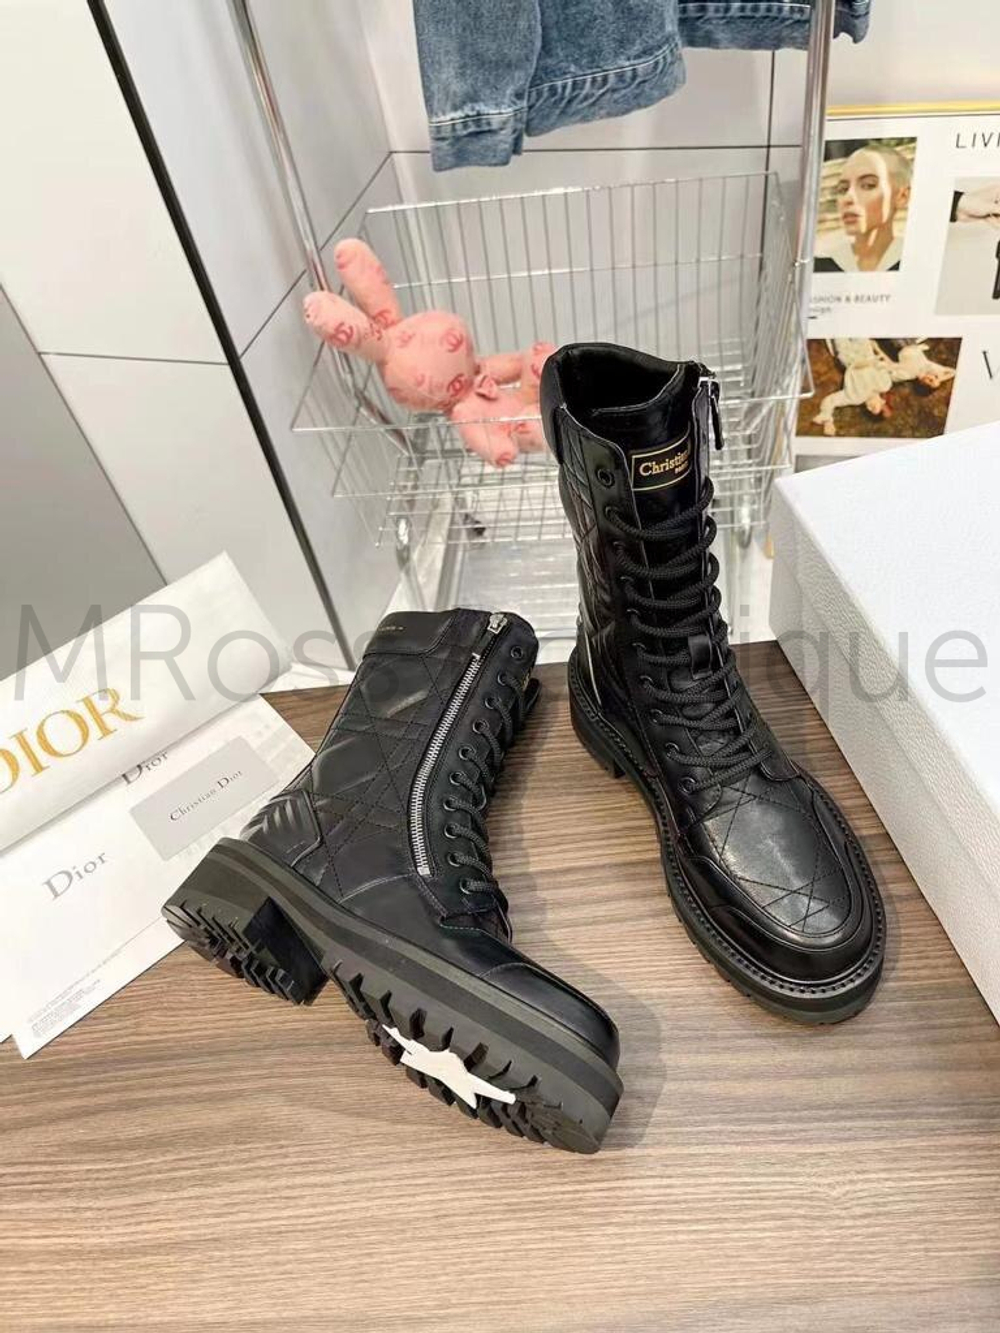 Черные ботинки D-Leader Dior (Диор) люкс класса